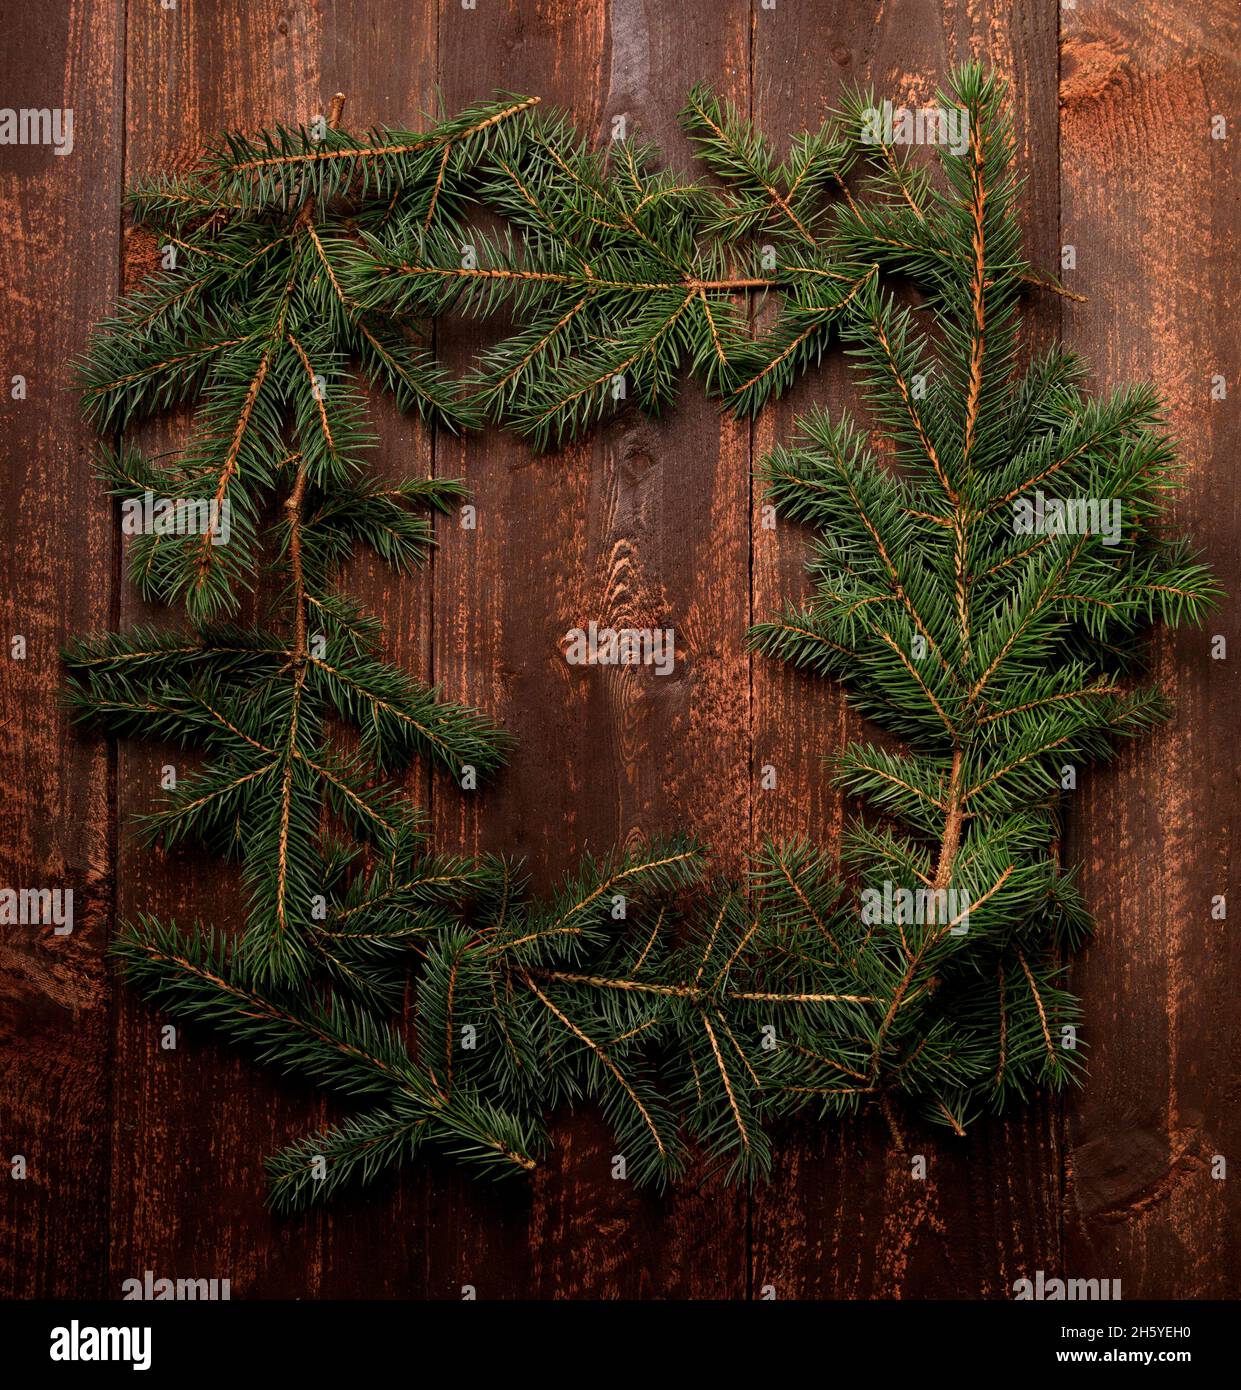 Marco de la rama del abeto del árbol de Navidad en un fondo de madera oscuro Foto de stock